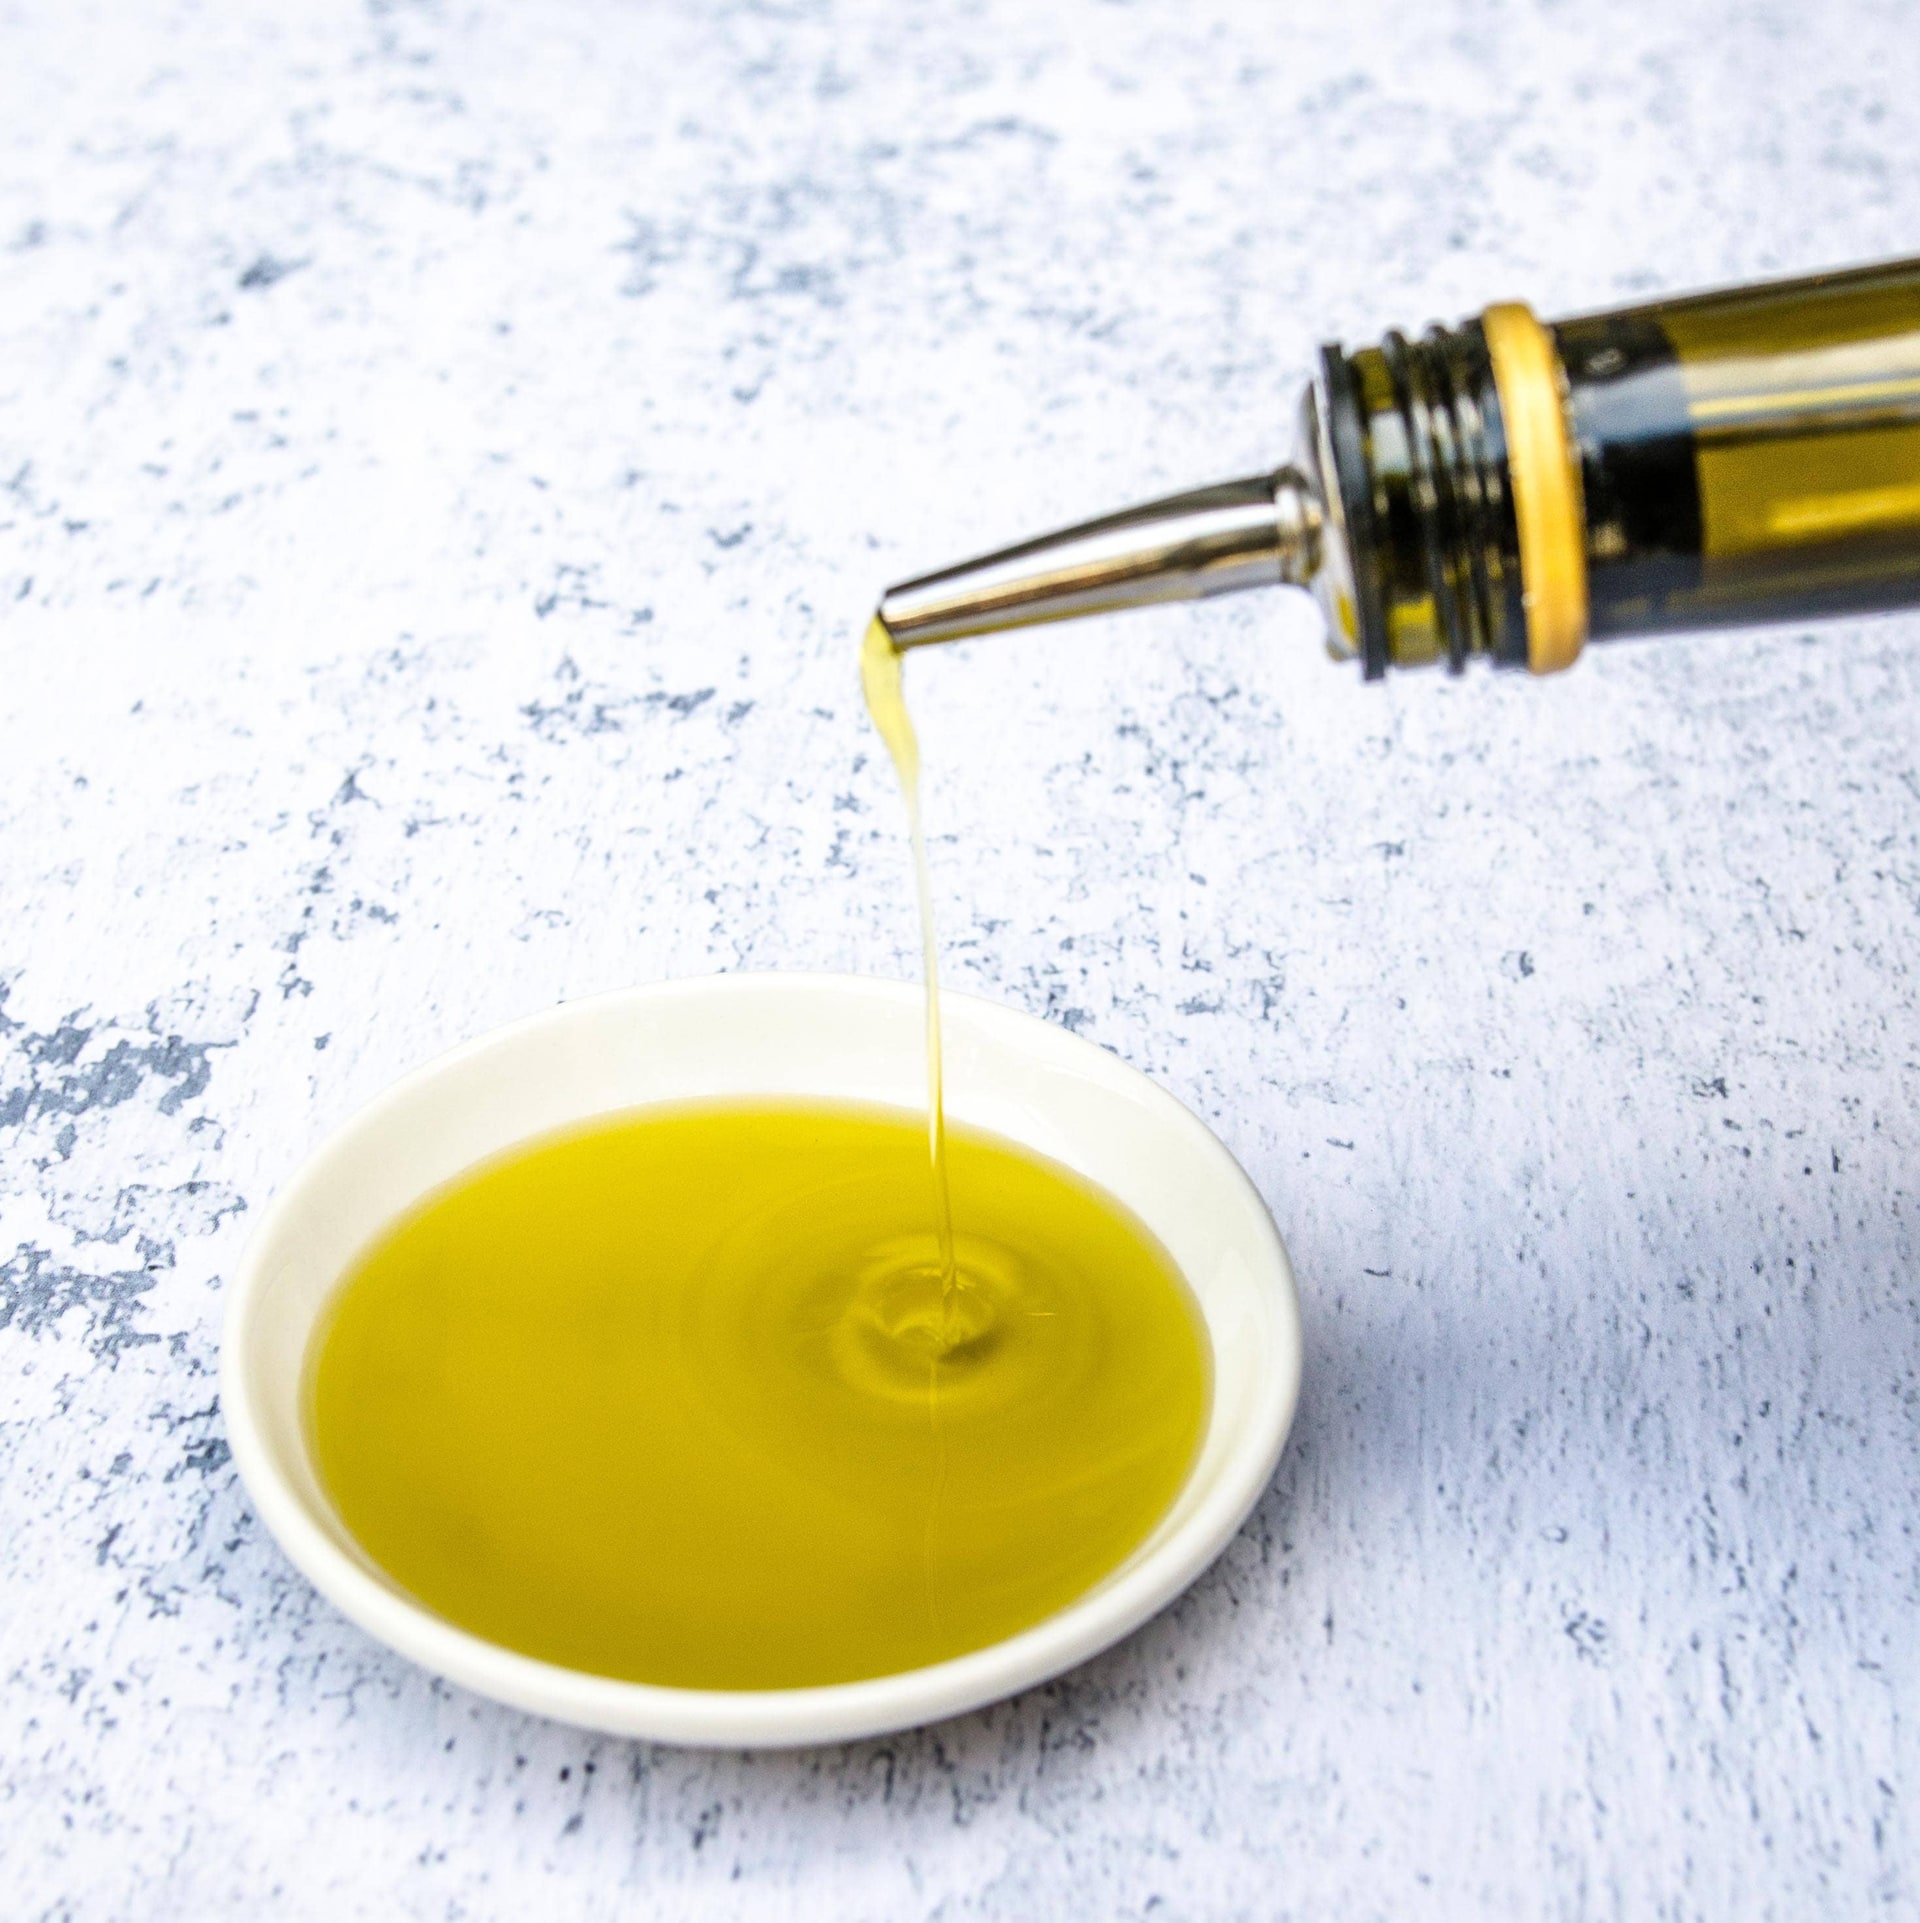 The Real Greek - Greek Food & Ingredients - Olive Oil